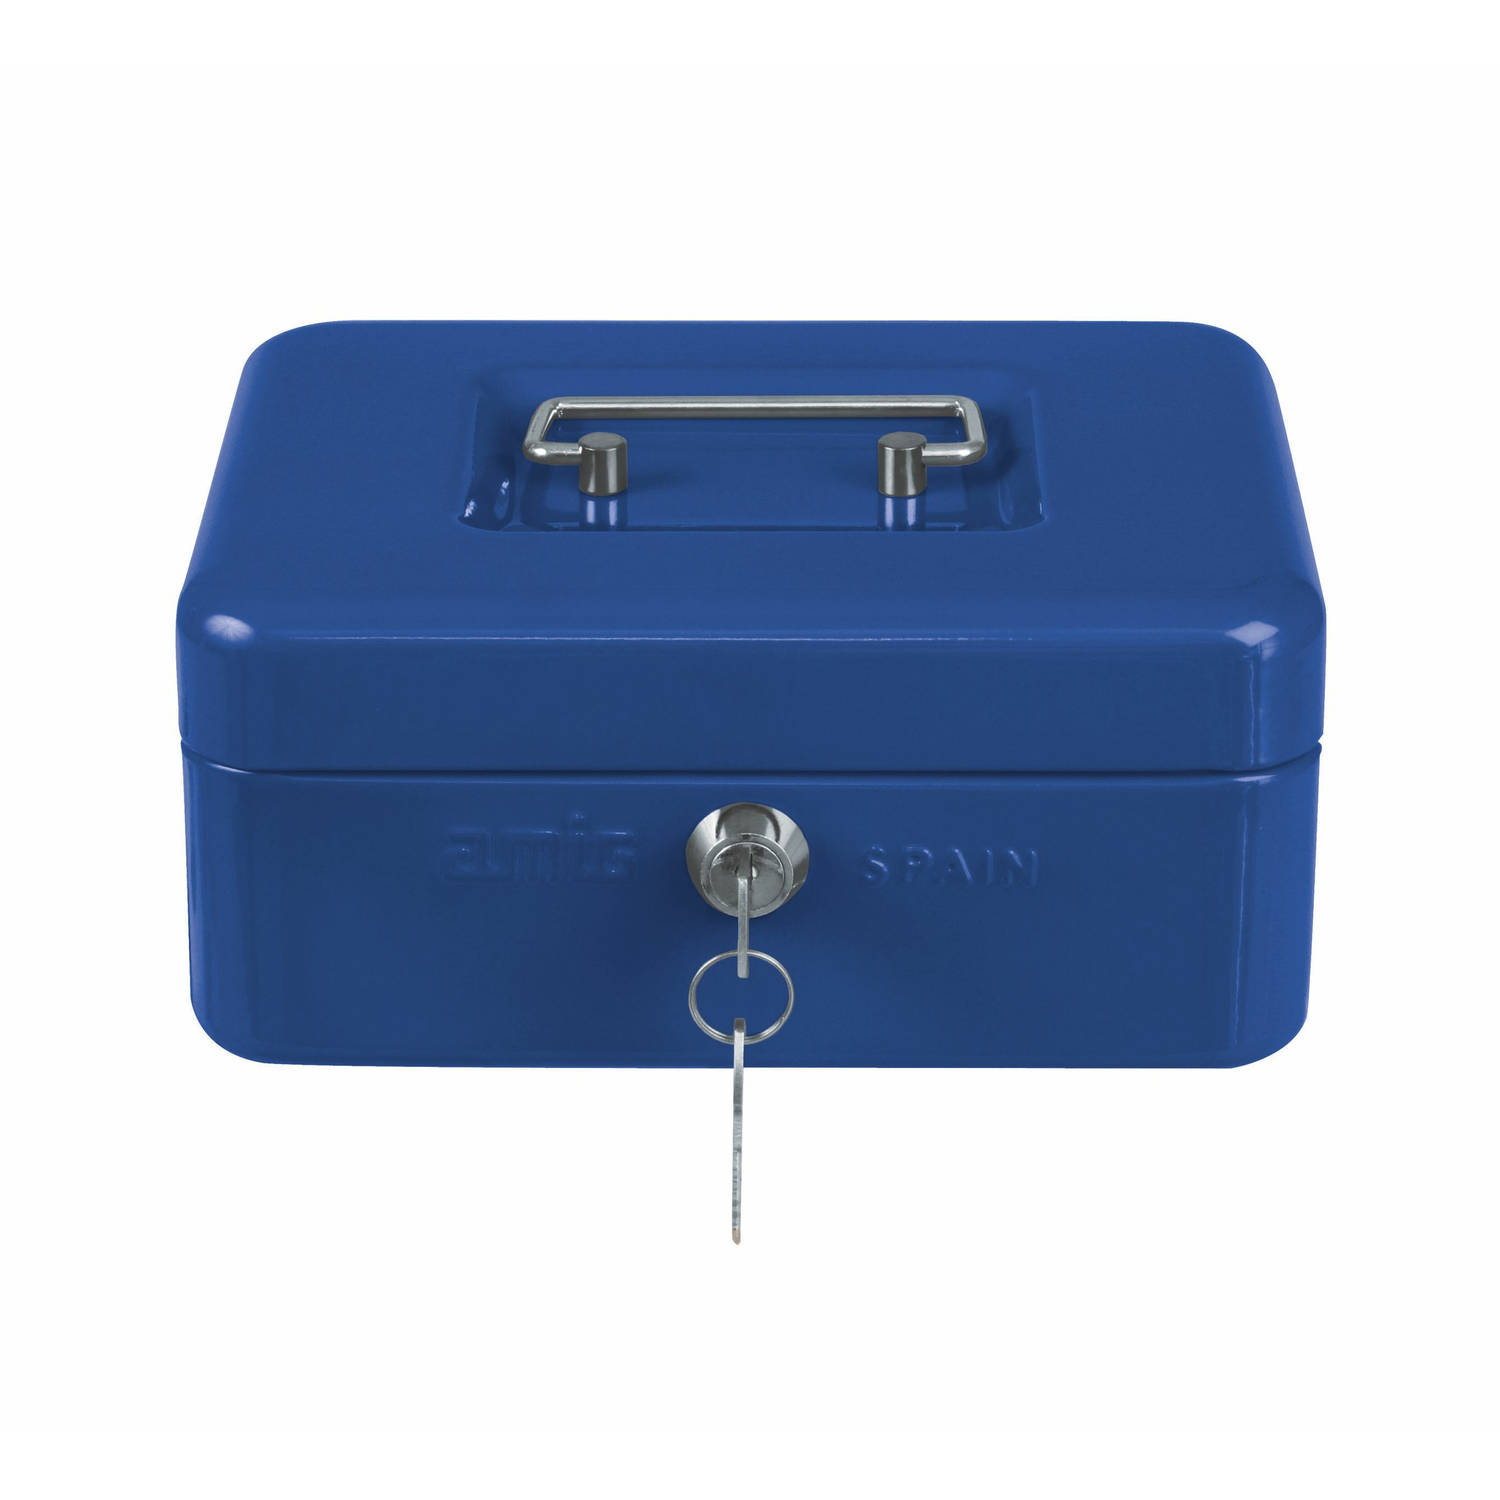 AMIG Geldkistje met 2 sleutels blauw staal 25 x 18 x 9 cm inbraakbeveiliging  Geldkistjes